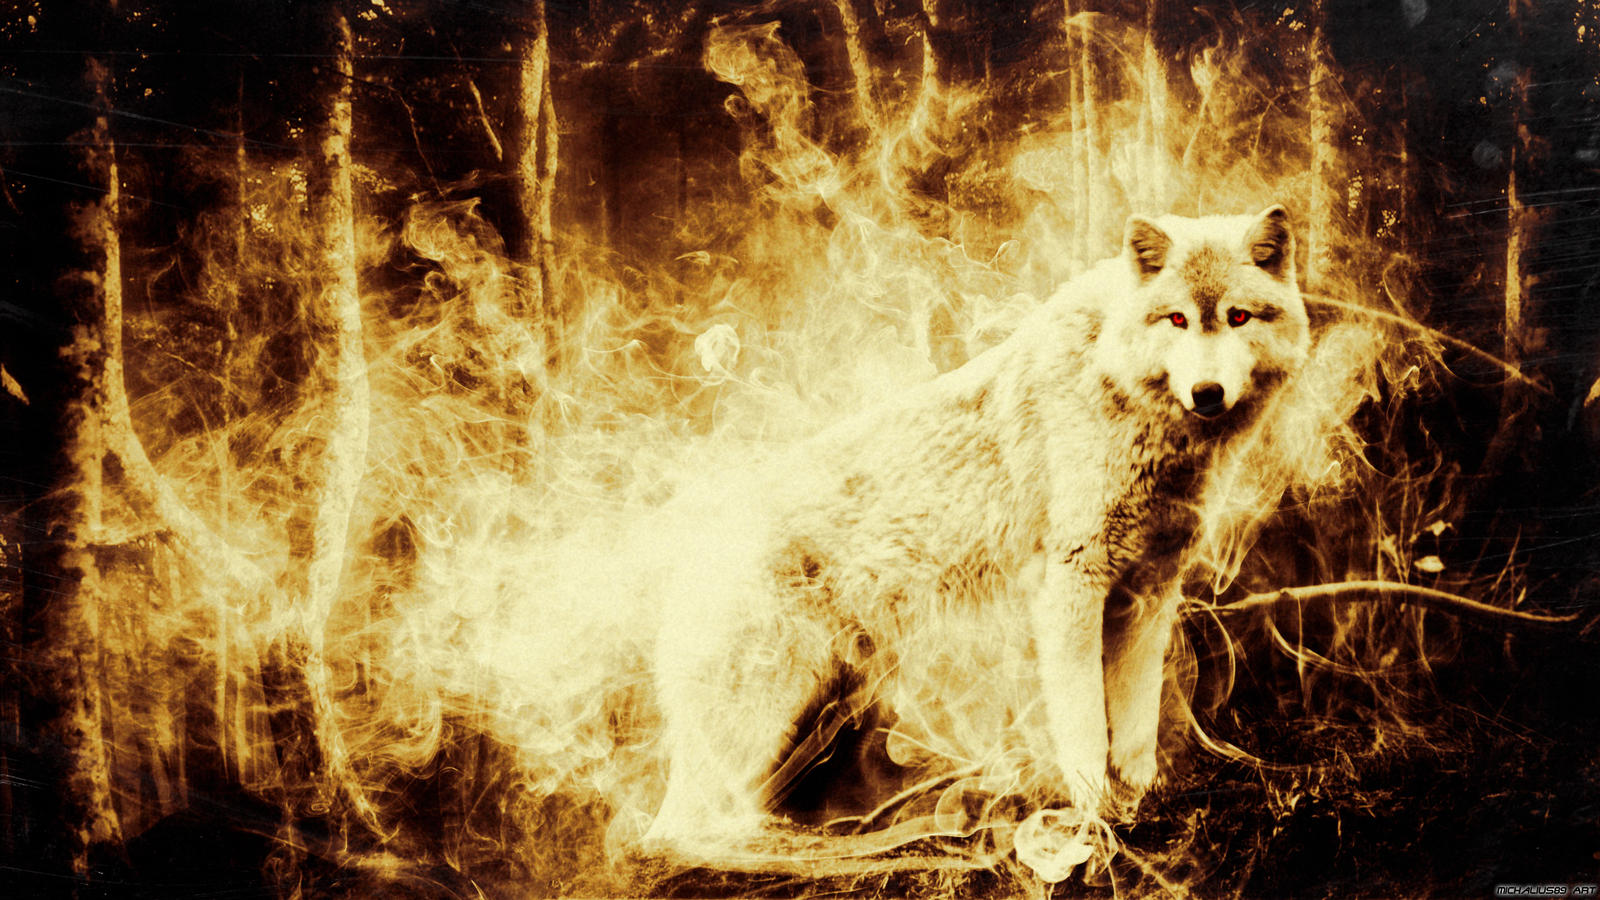 Fire Wolf by Michalius89 on DeviantArt